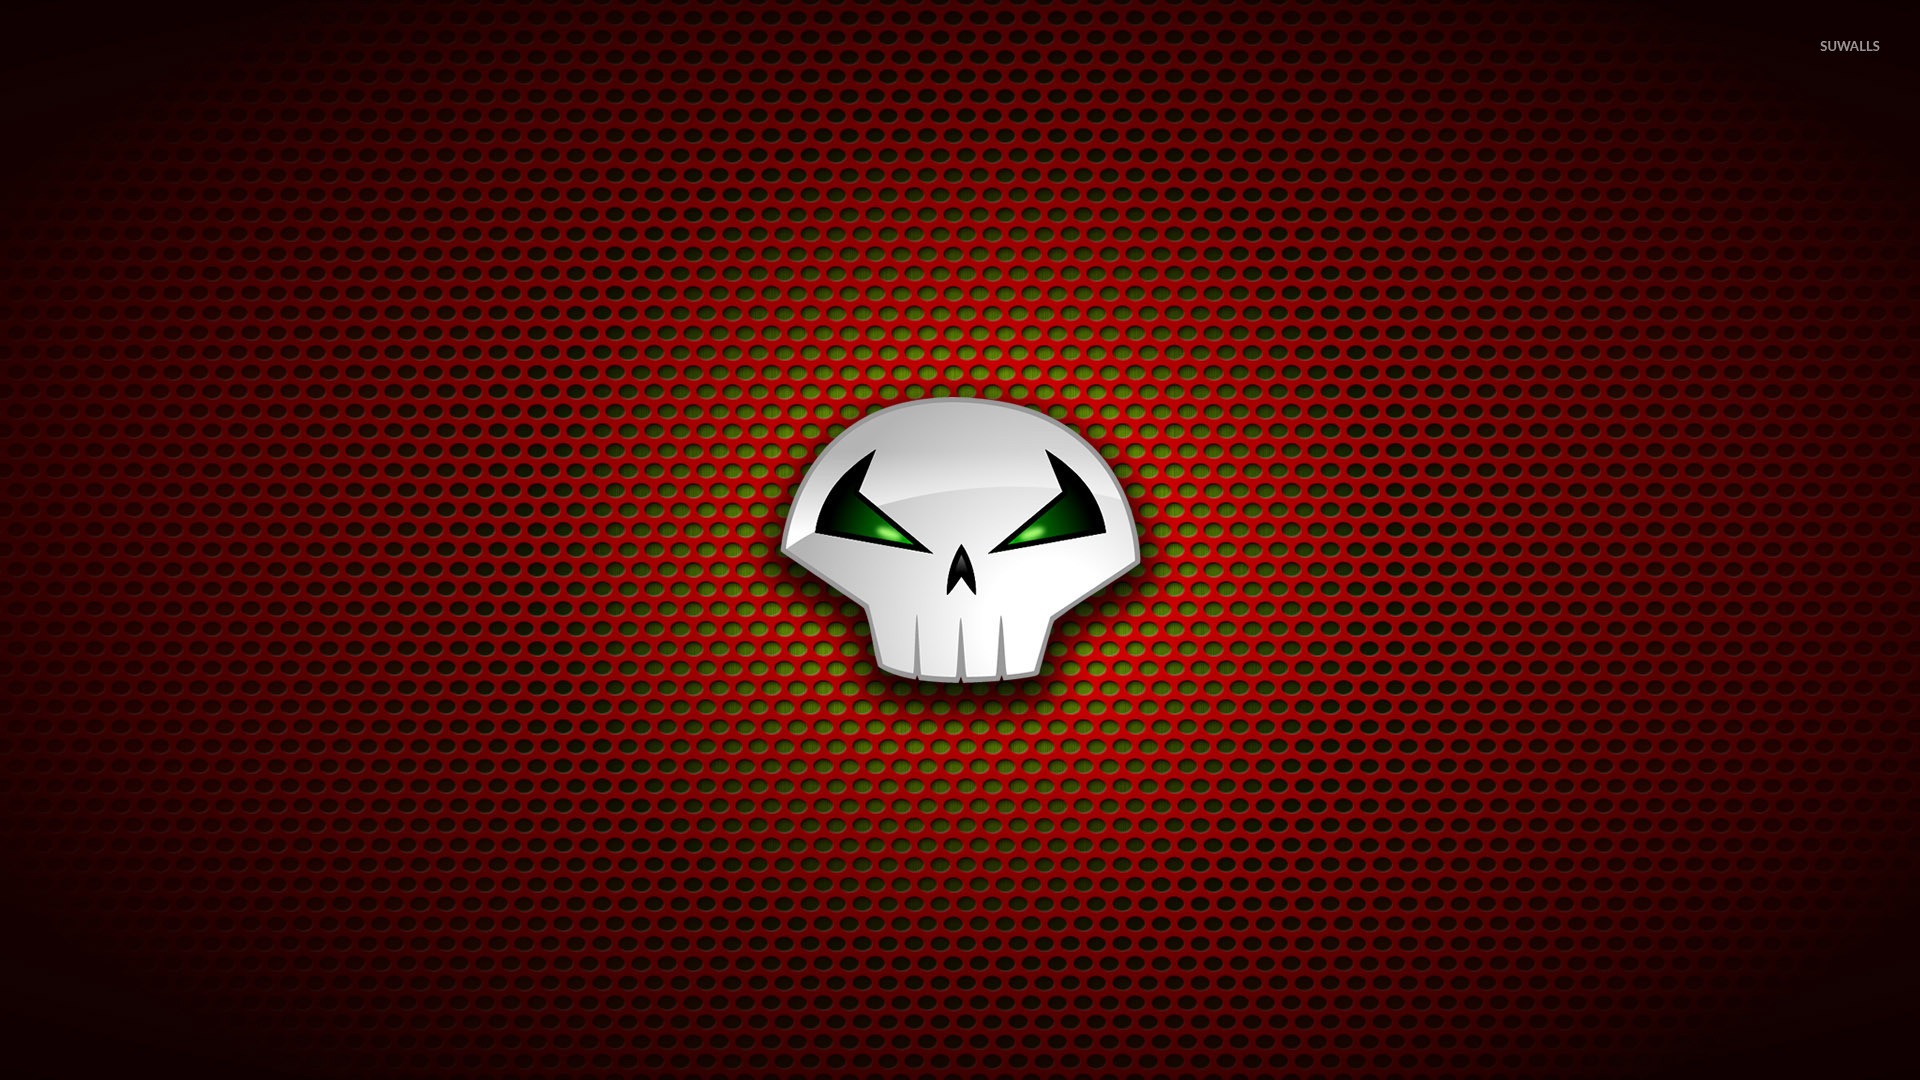 Punisher logo on circle pattern wallpaper